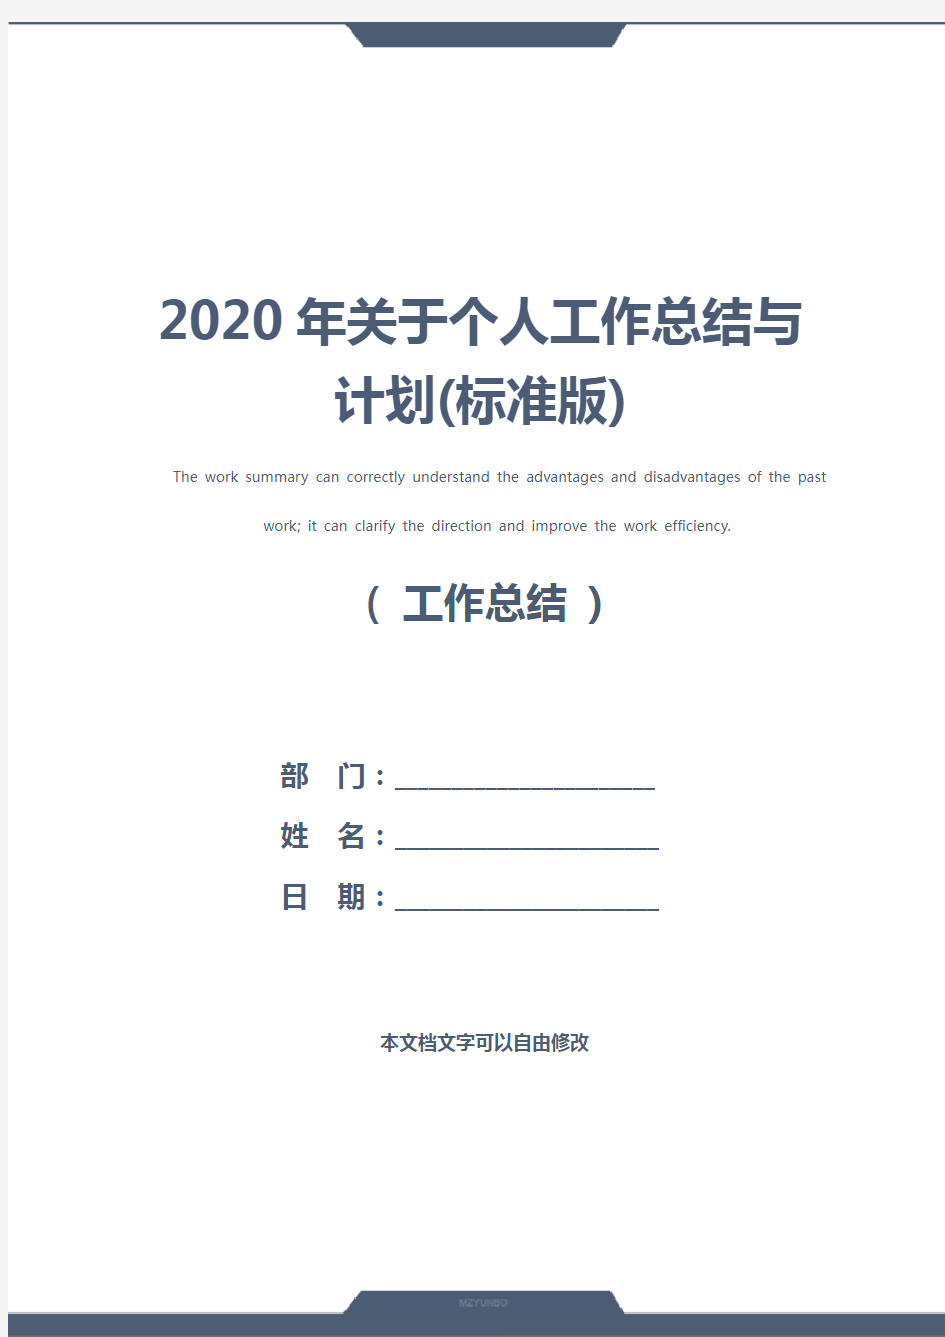 2020年关于个人工作总结与计划(标准版)